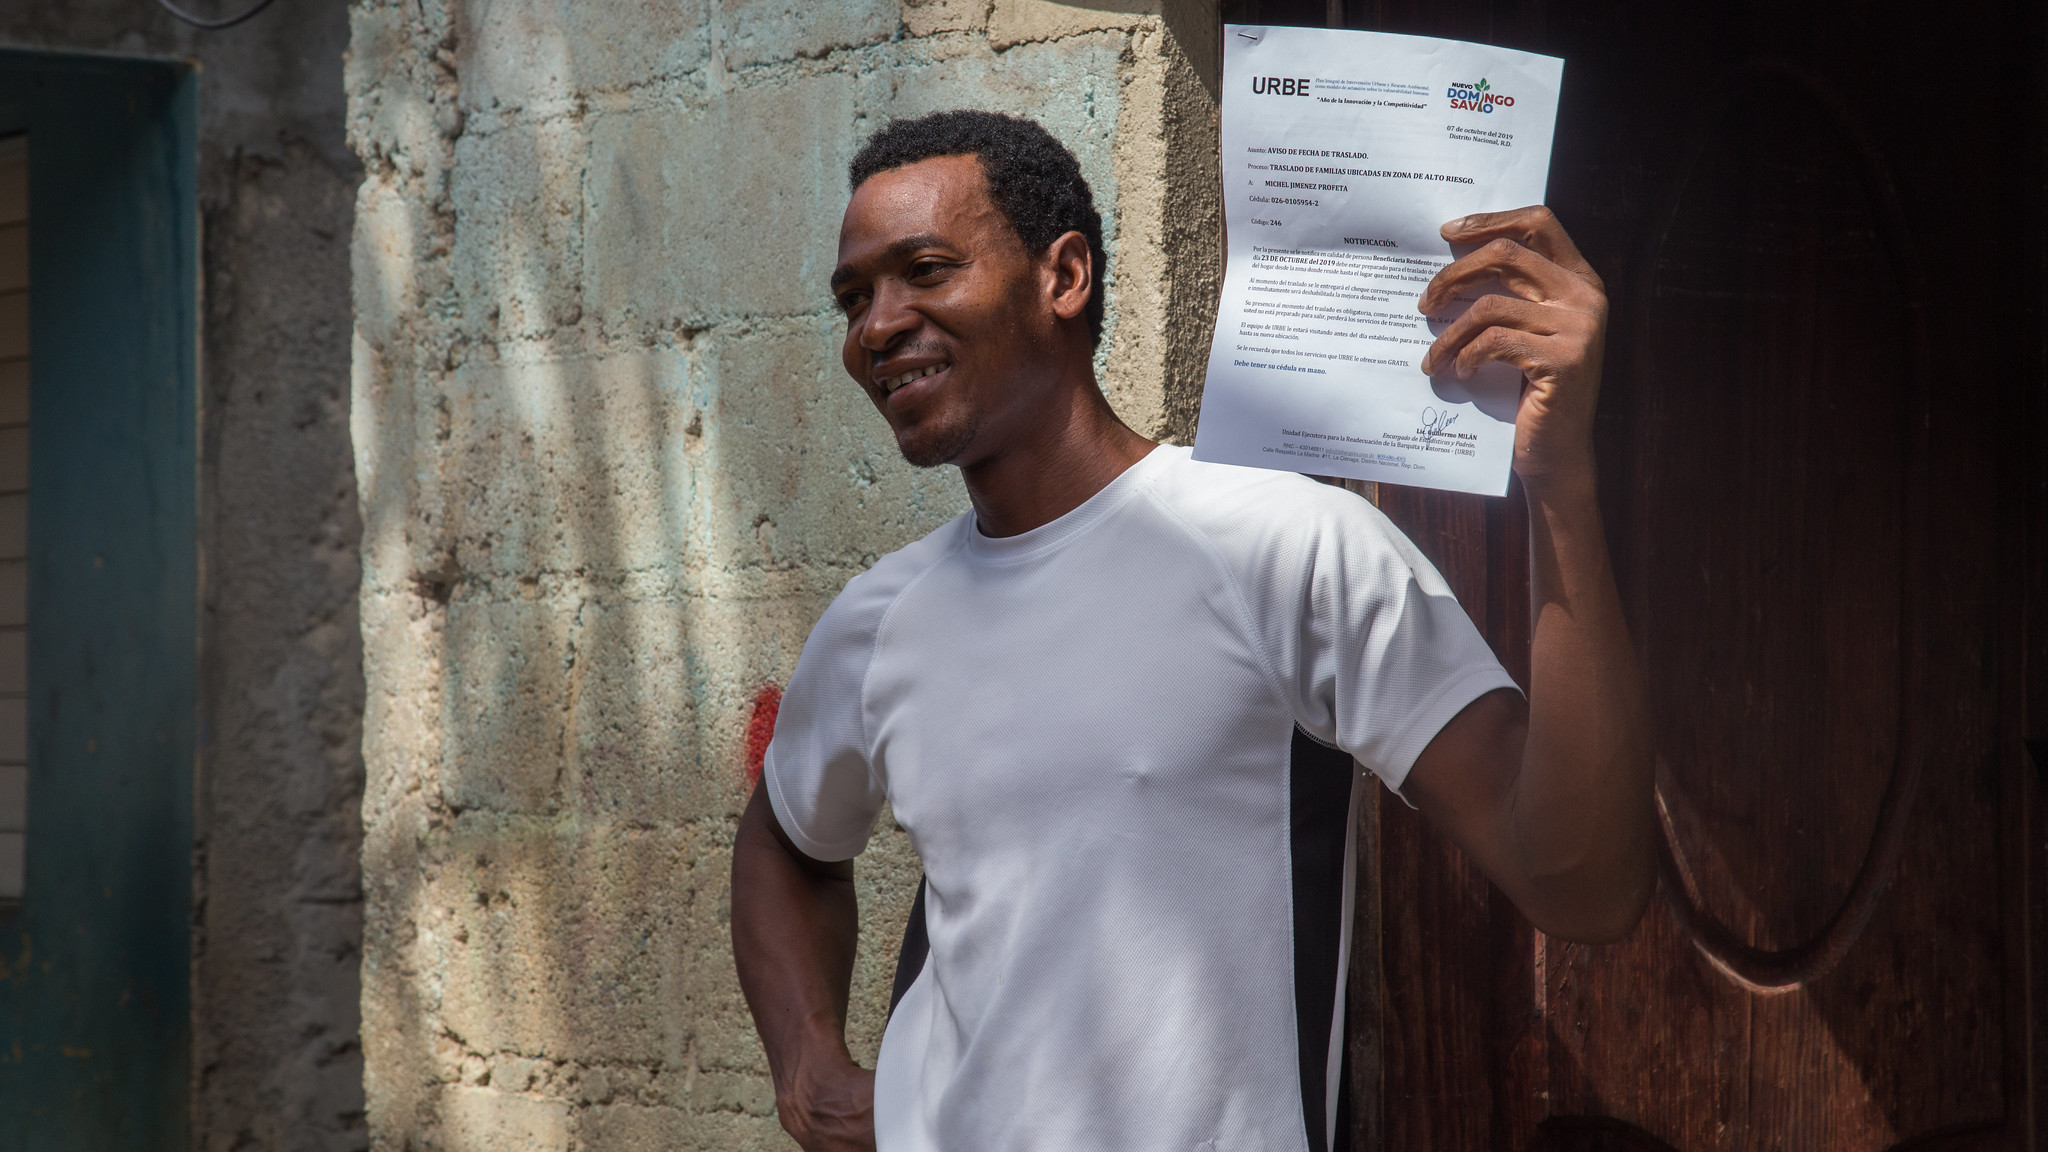 REPÚBLICA DOMINICANA: Nuevo Domingo Savio: URBE continúa notificación a familias sobre traslado de zona alto riesgo ribera río Ozama y apoyo en mudanza